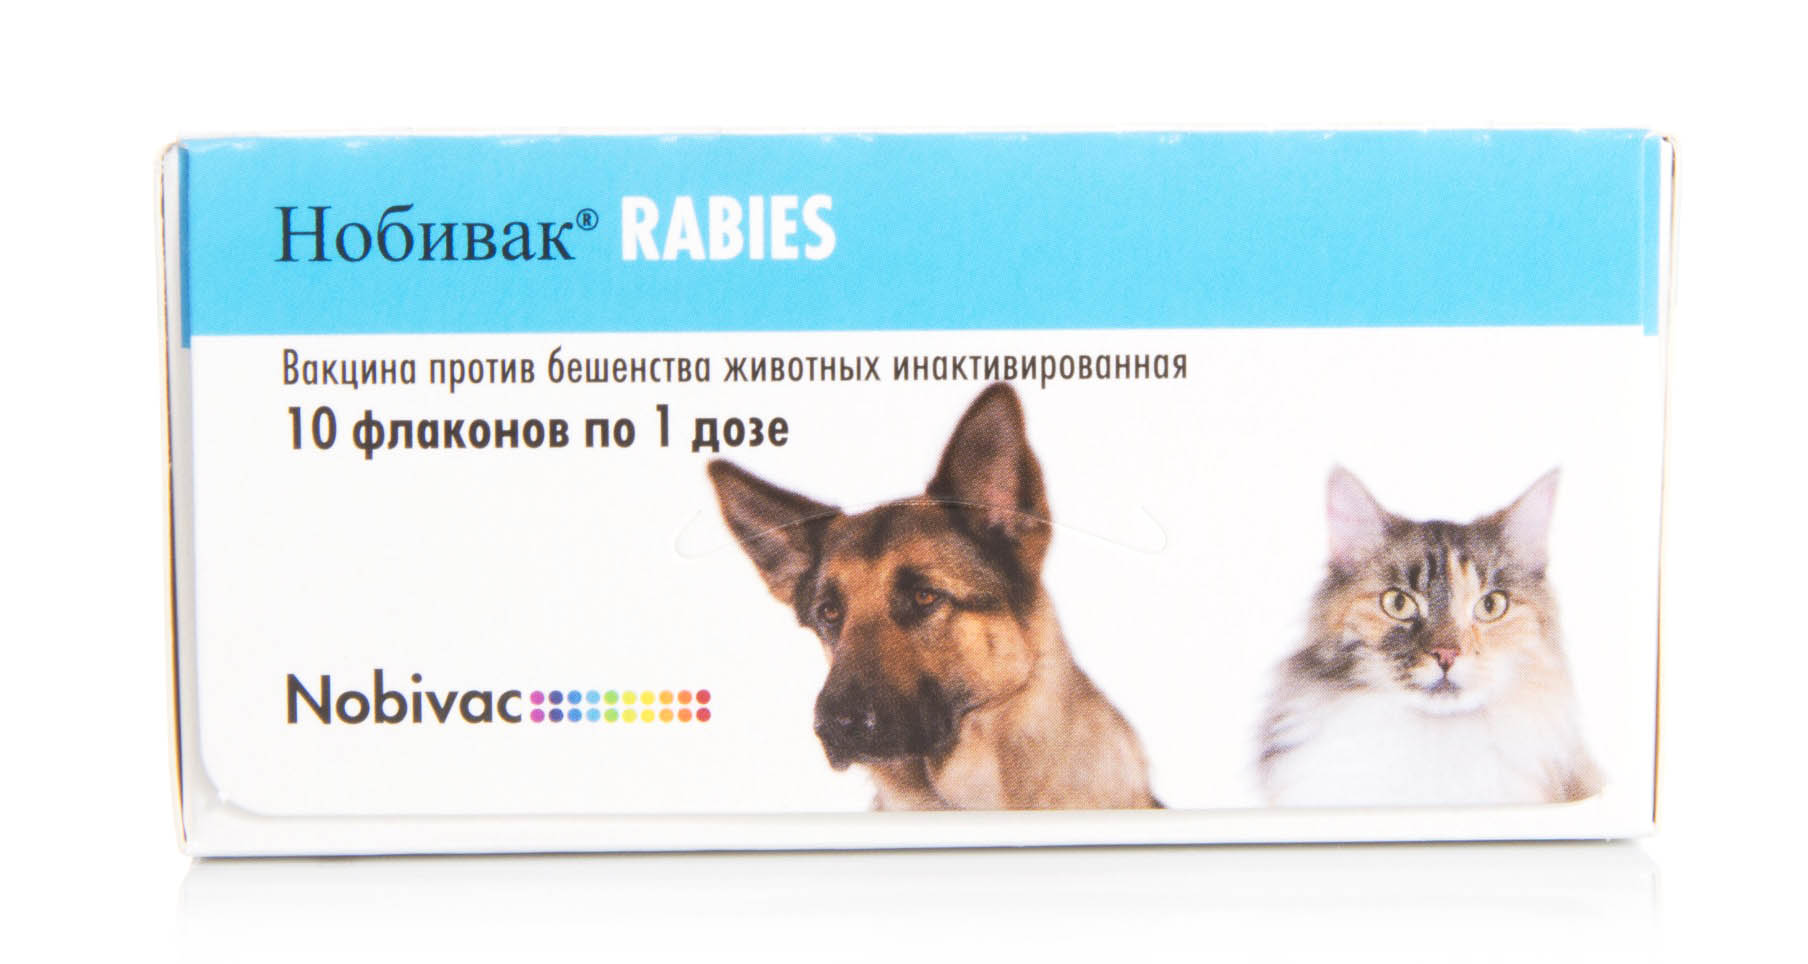 Прививка от бешенства кошке. Прививка от бешенства собаке Nobivac Rabies. Вакцина Нобивак Rabies для собак. Вакцина для кошек Нобивак Rabies. Нобивак Rabies для собак и кошек.